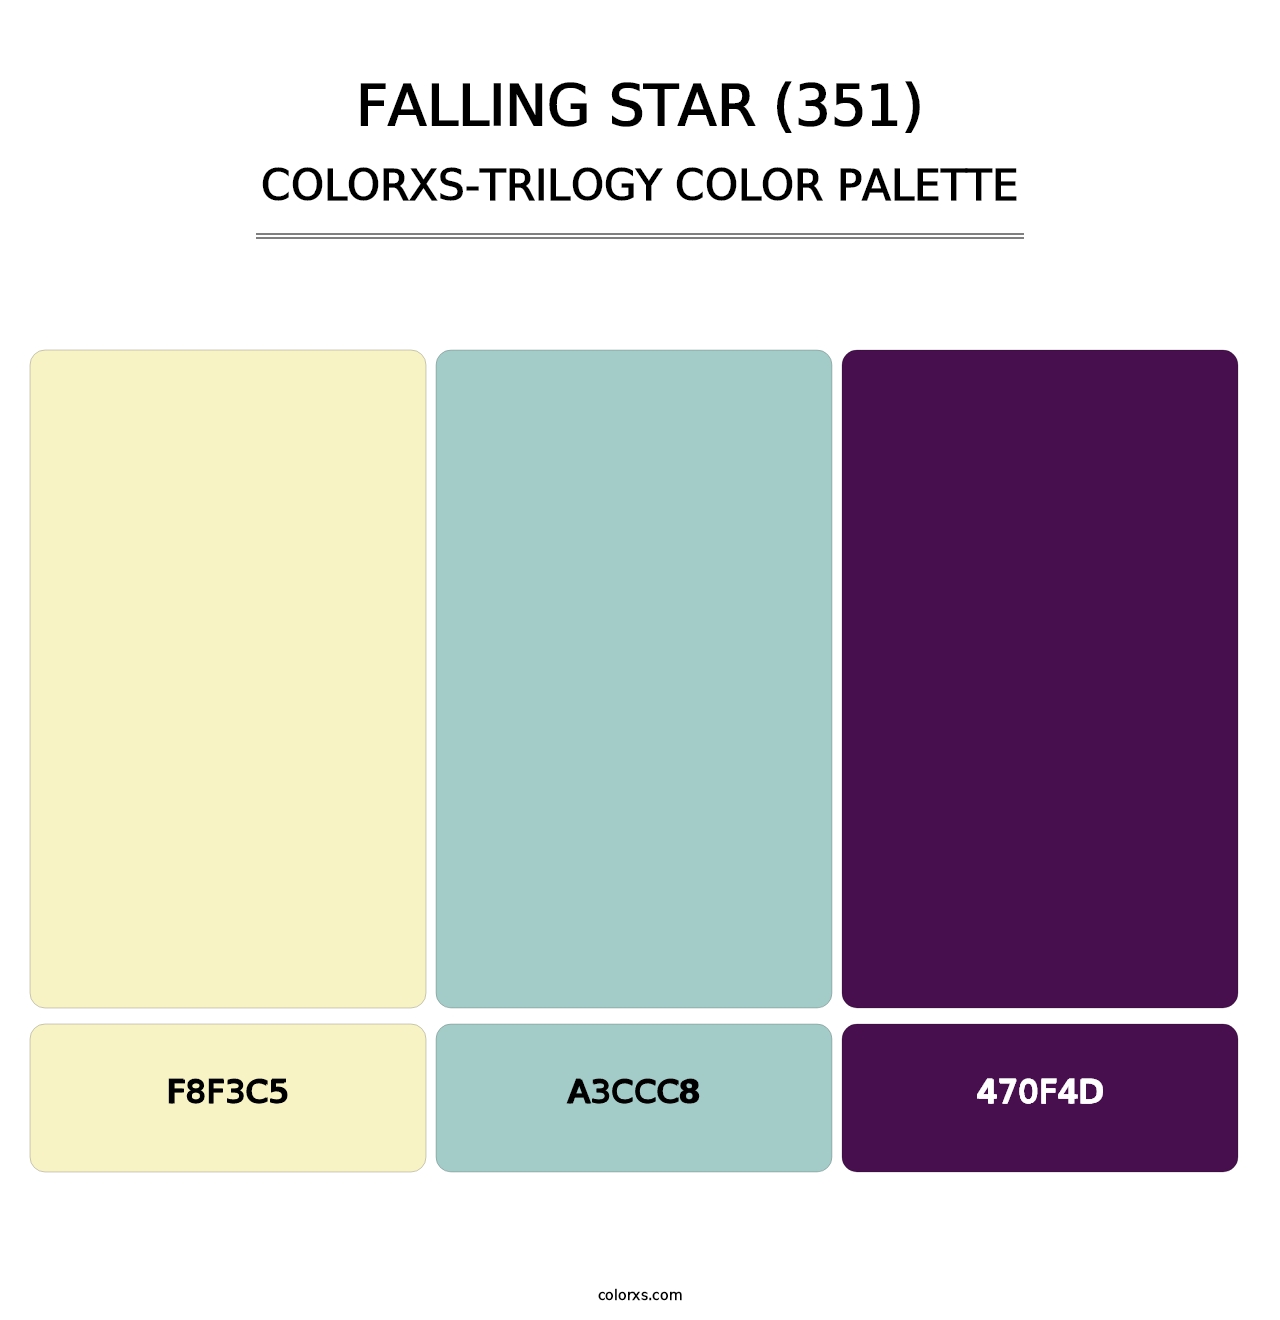 Falling Star (351) - Colorxs Trilogy Palette